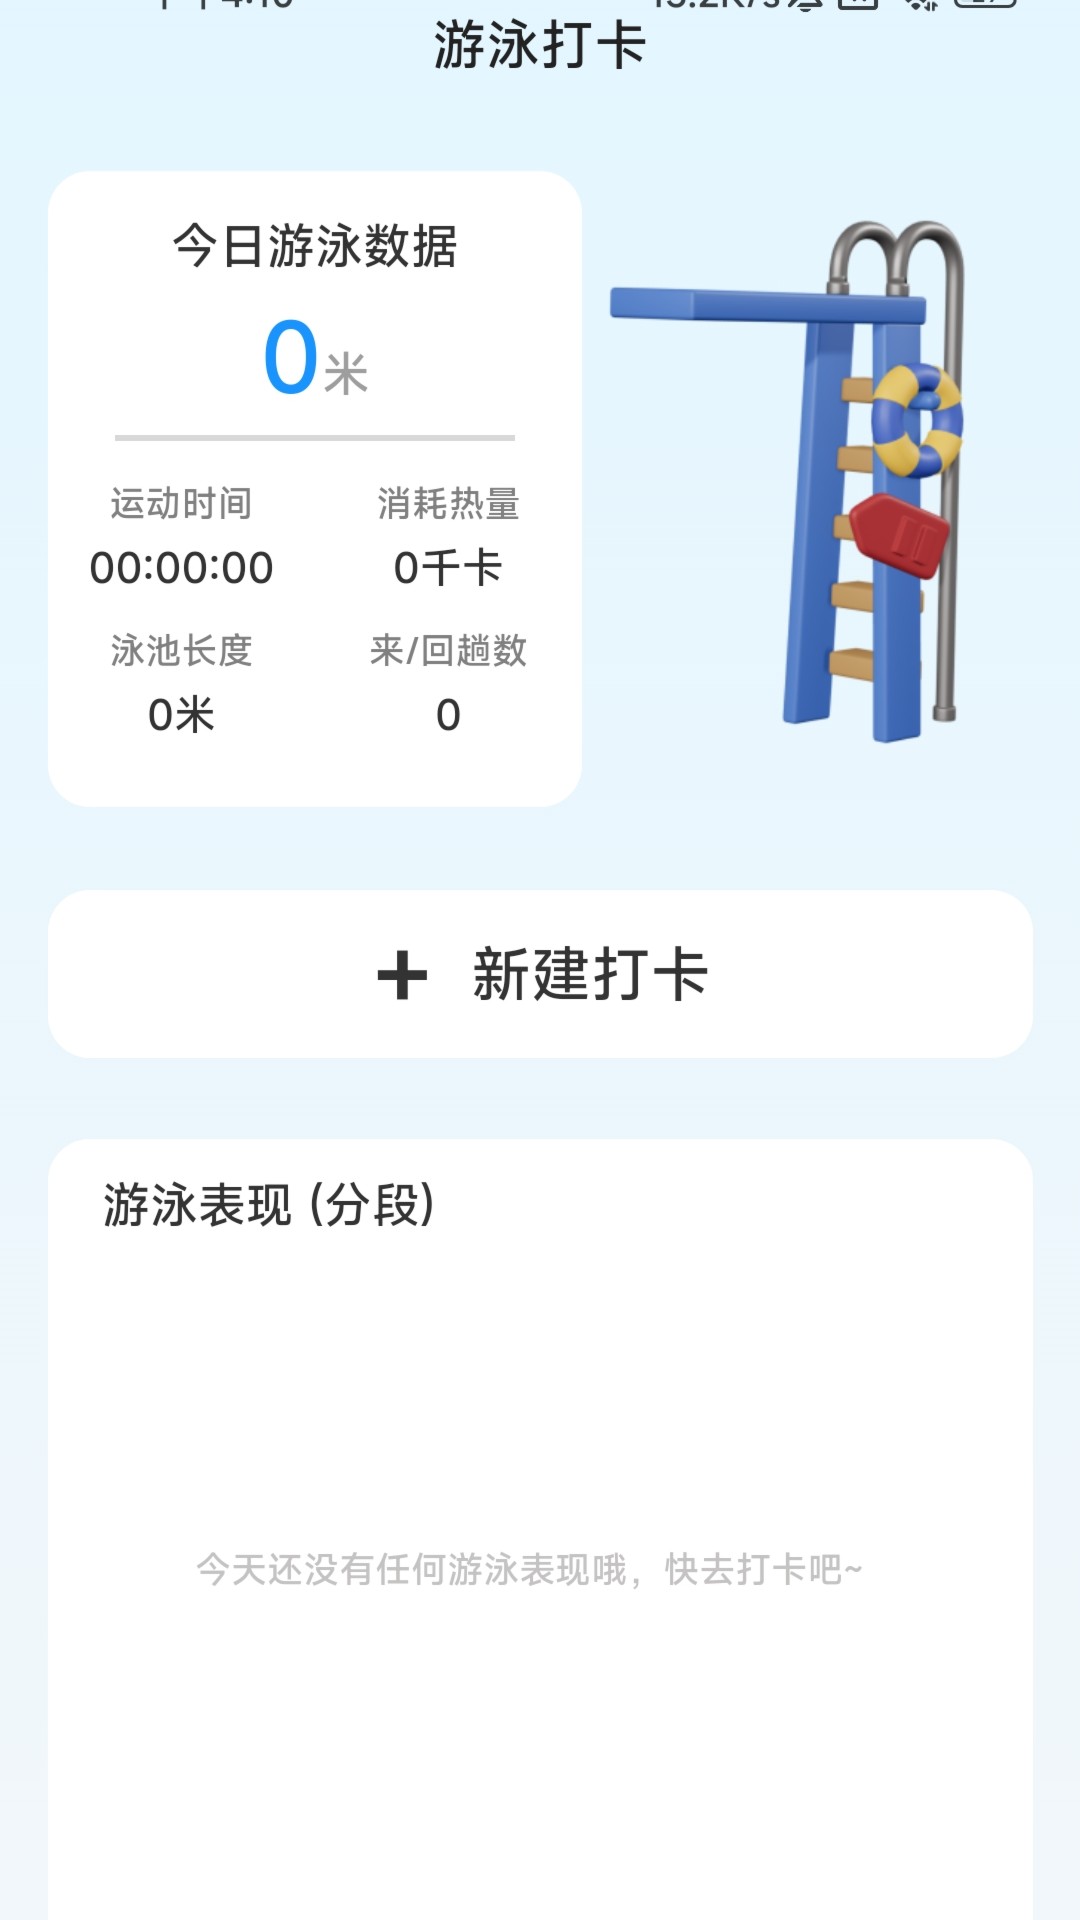 爽步生活app下载,爽步生活app官方版 v2.0.1